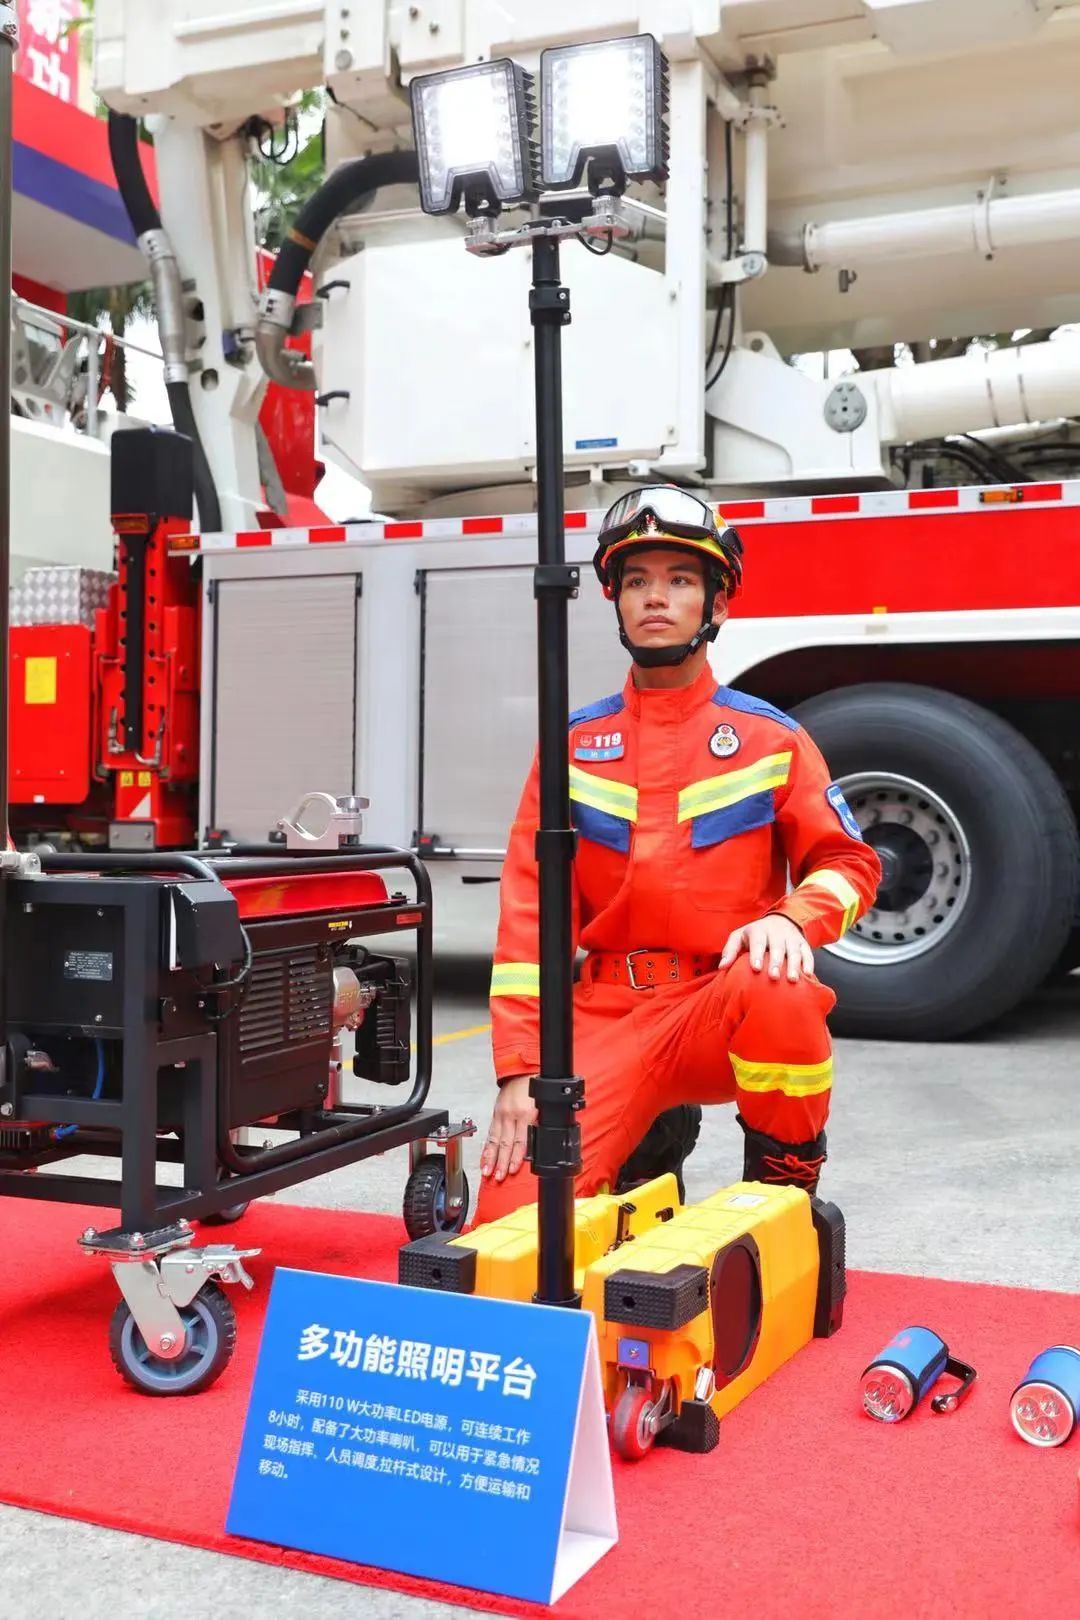 在装备配备力度上,广州执勤消防车辆已达到536辆,各类装备器材30万